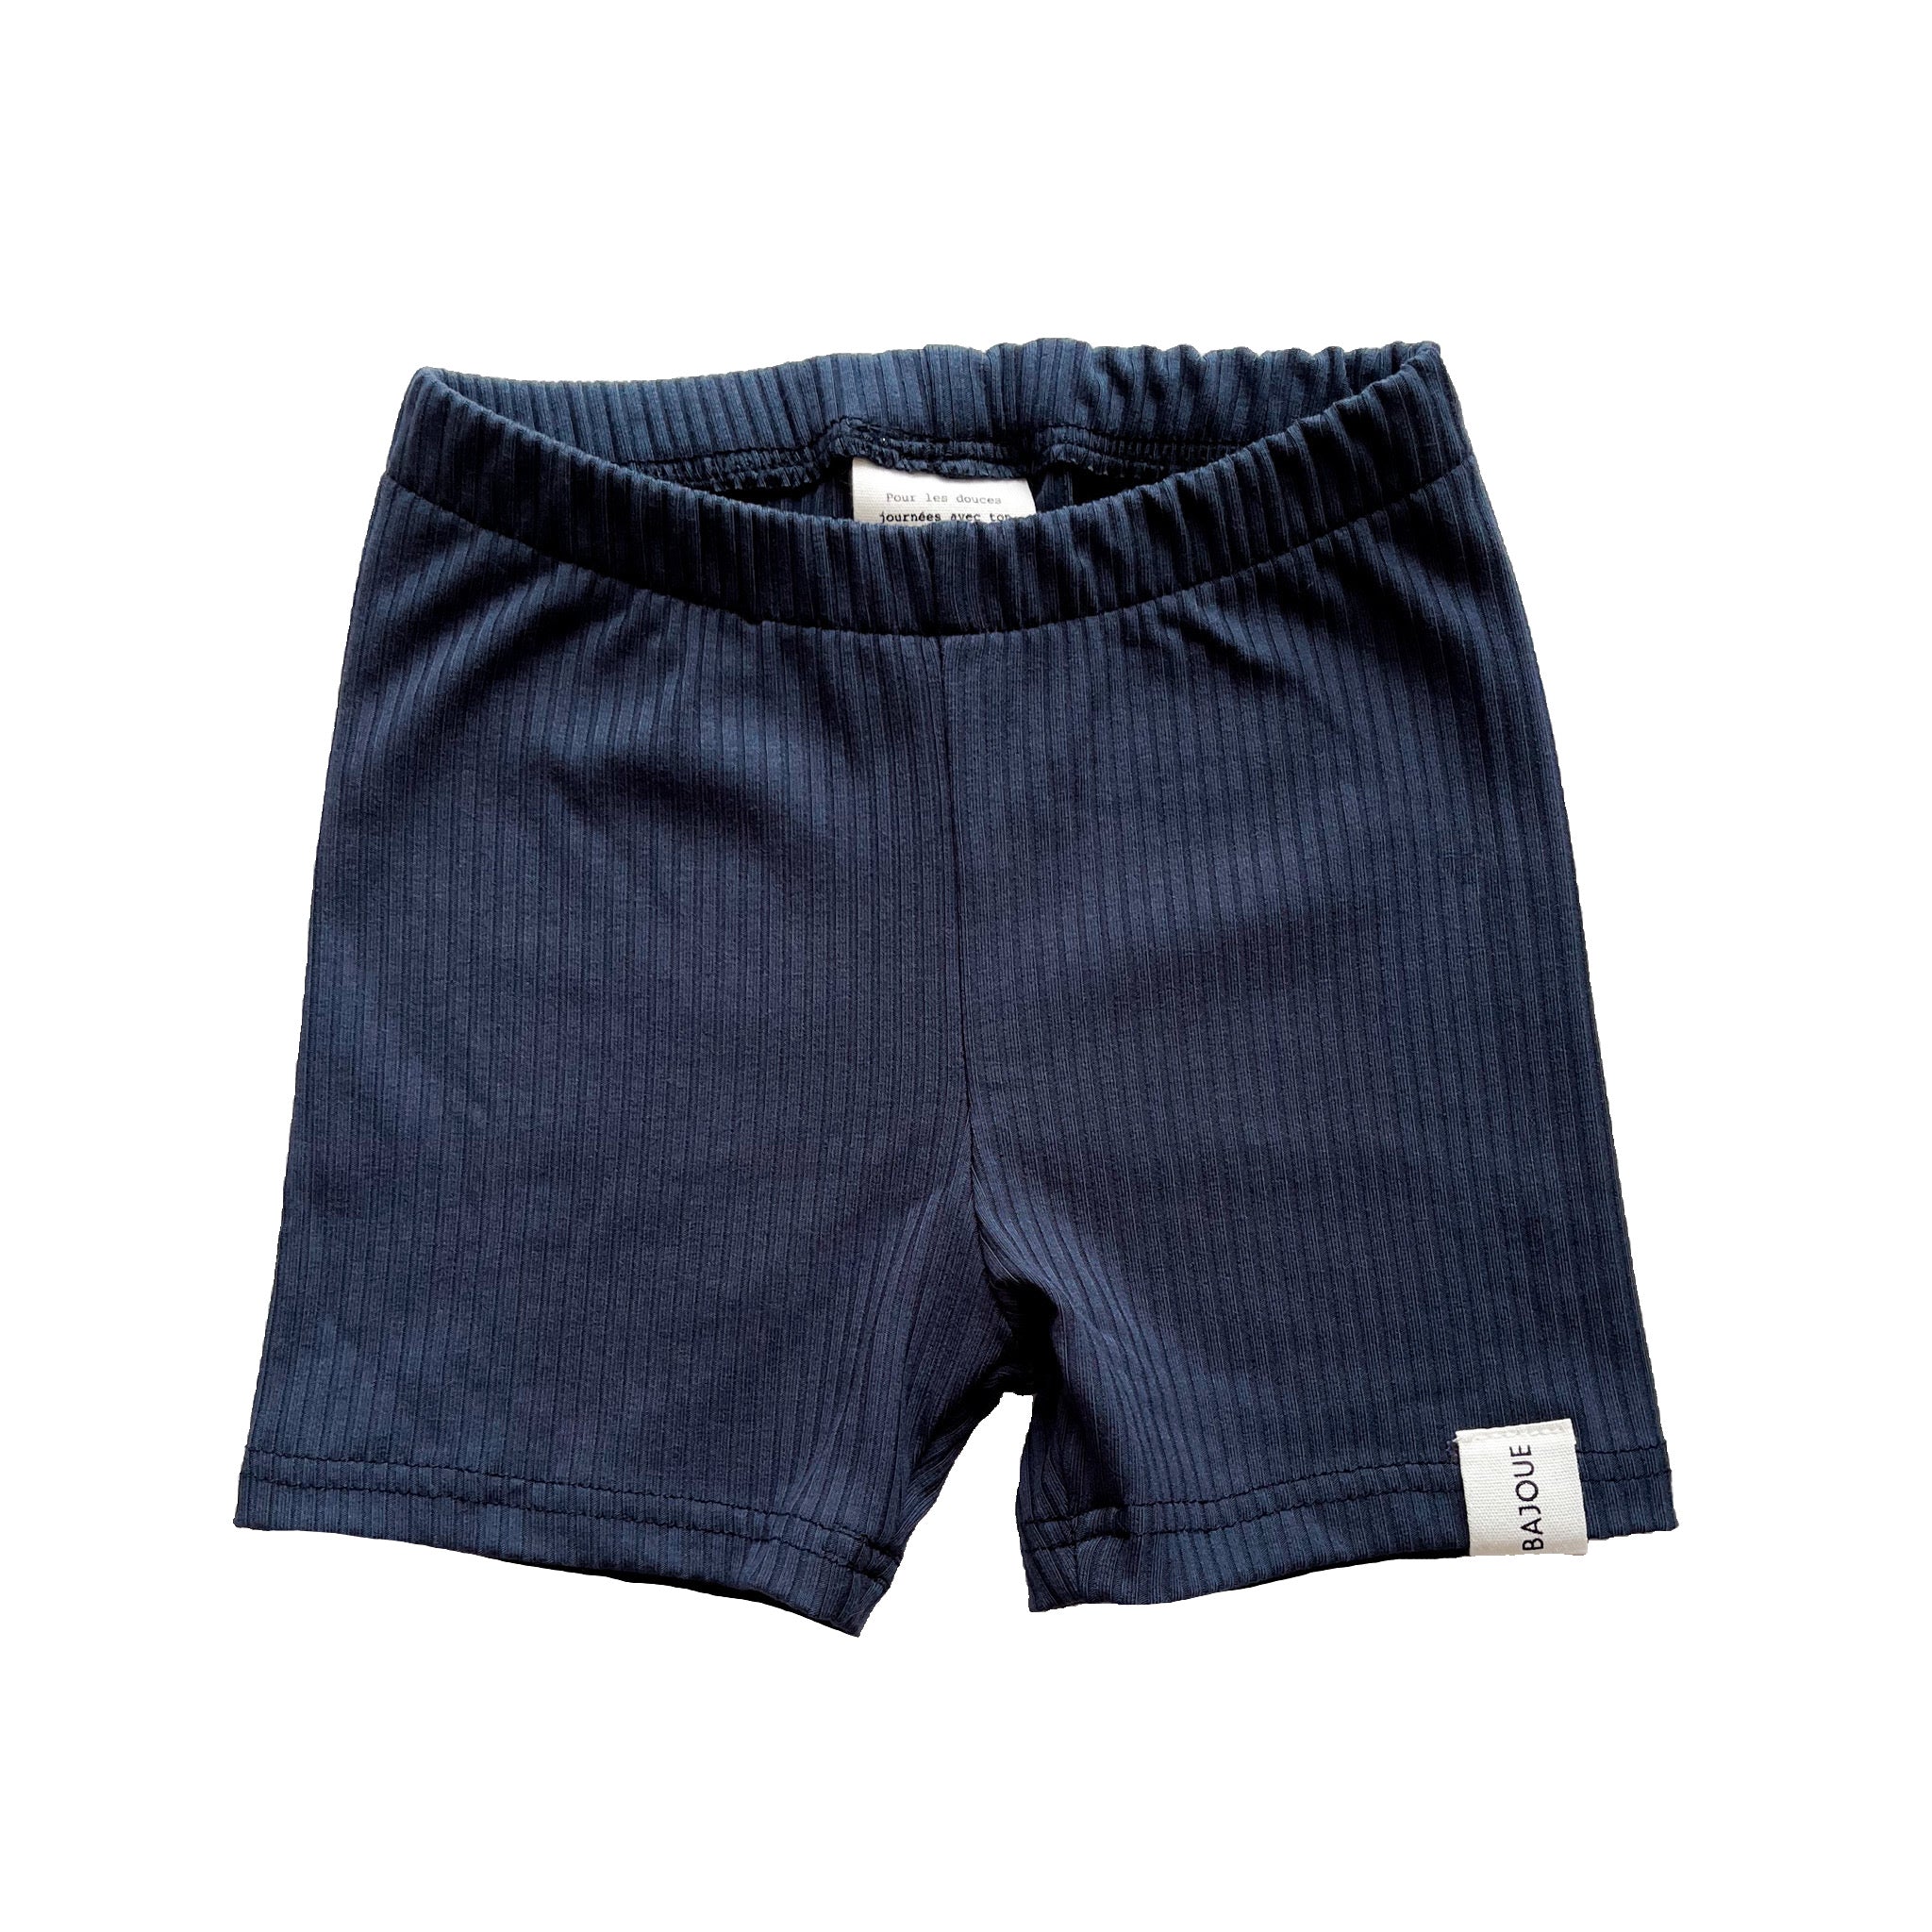 Unisex bamboo shorts - Navy